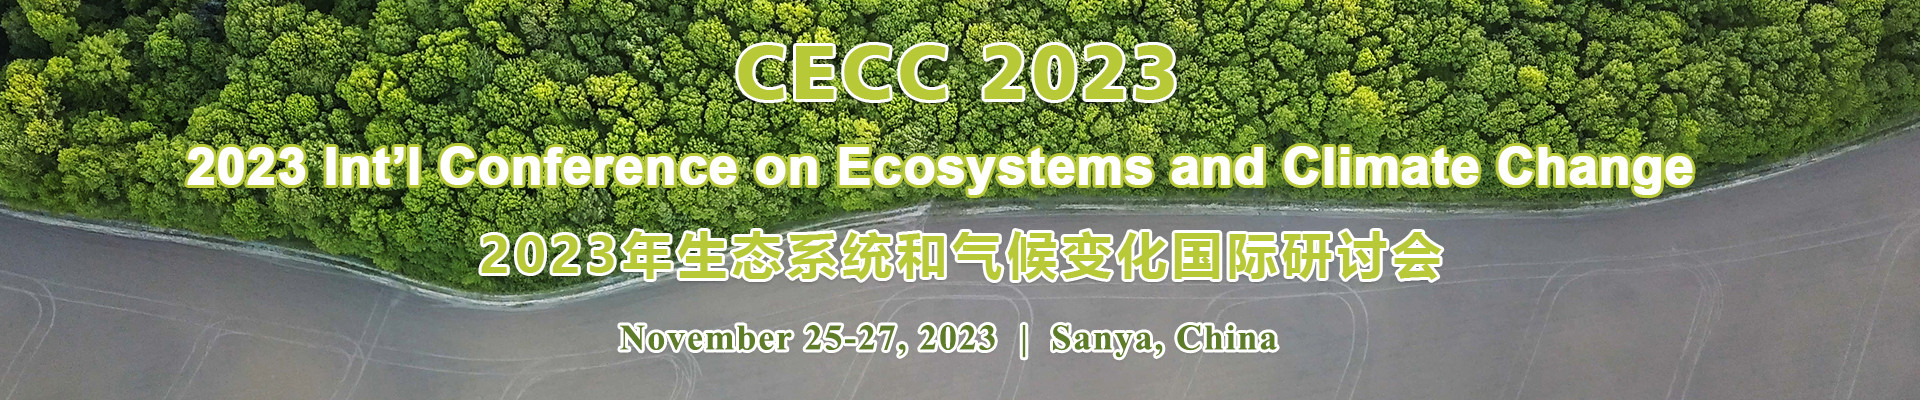 2023年生态系统和气候变化国际研讨会 (CECC 2023) 